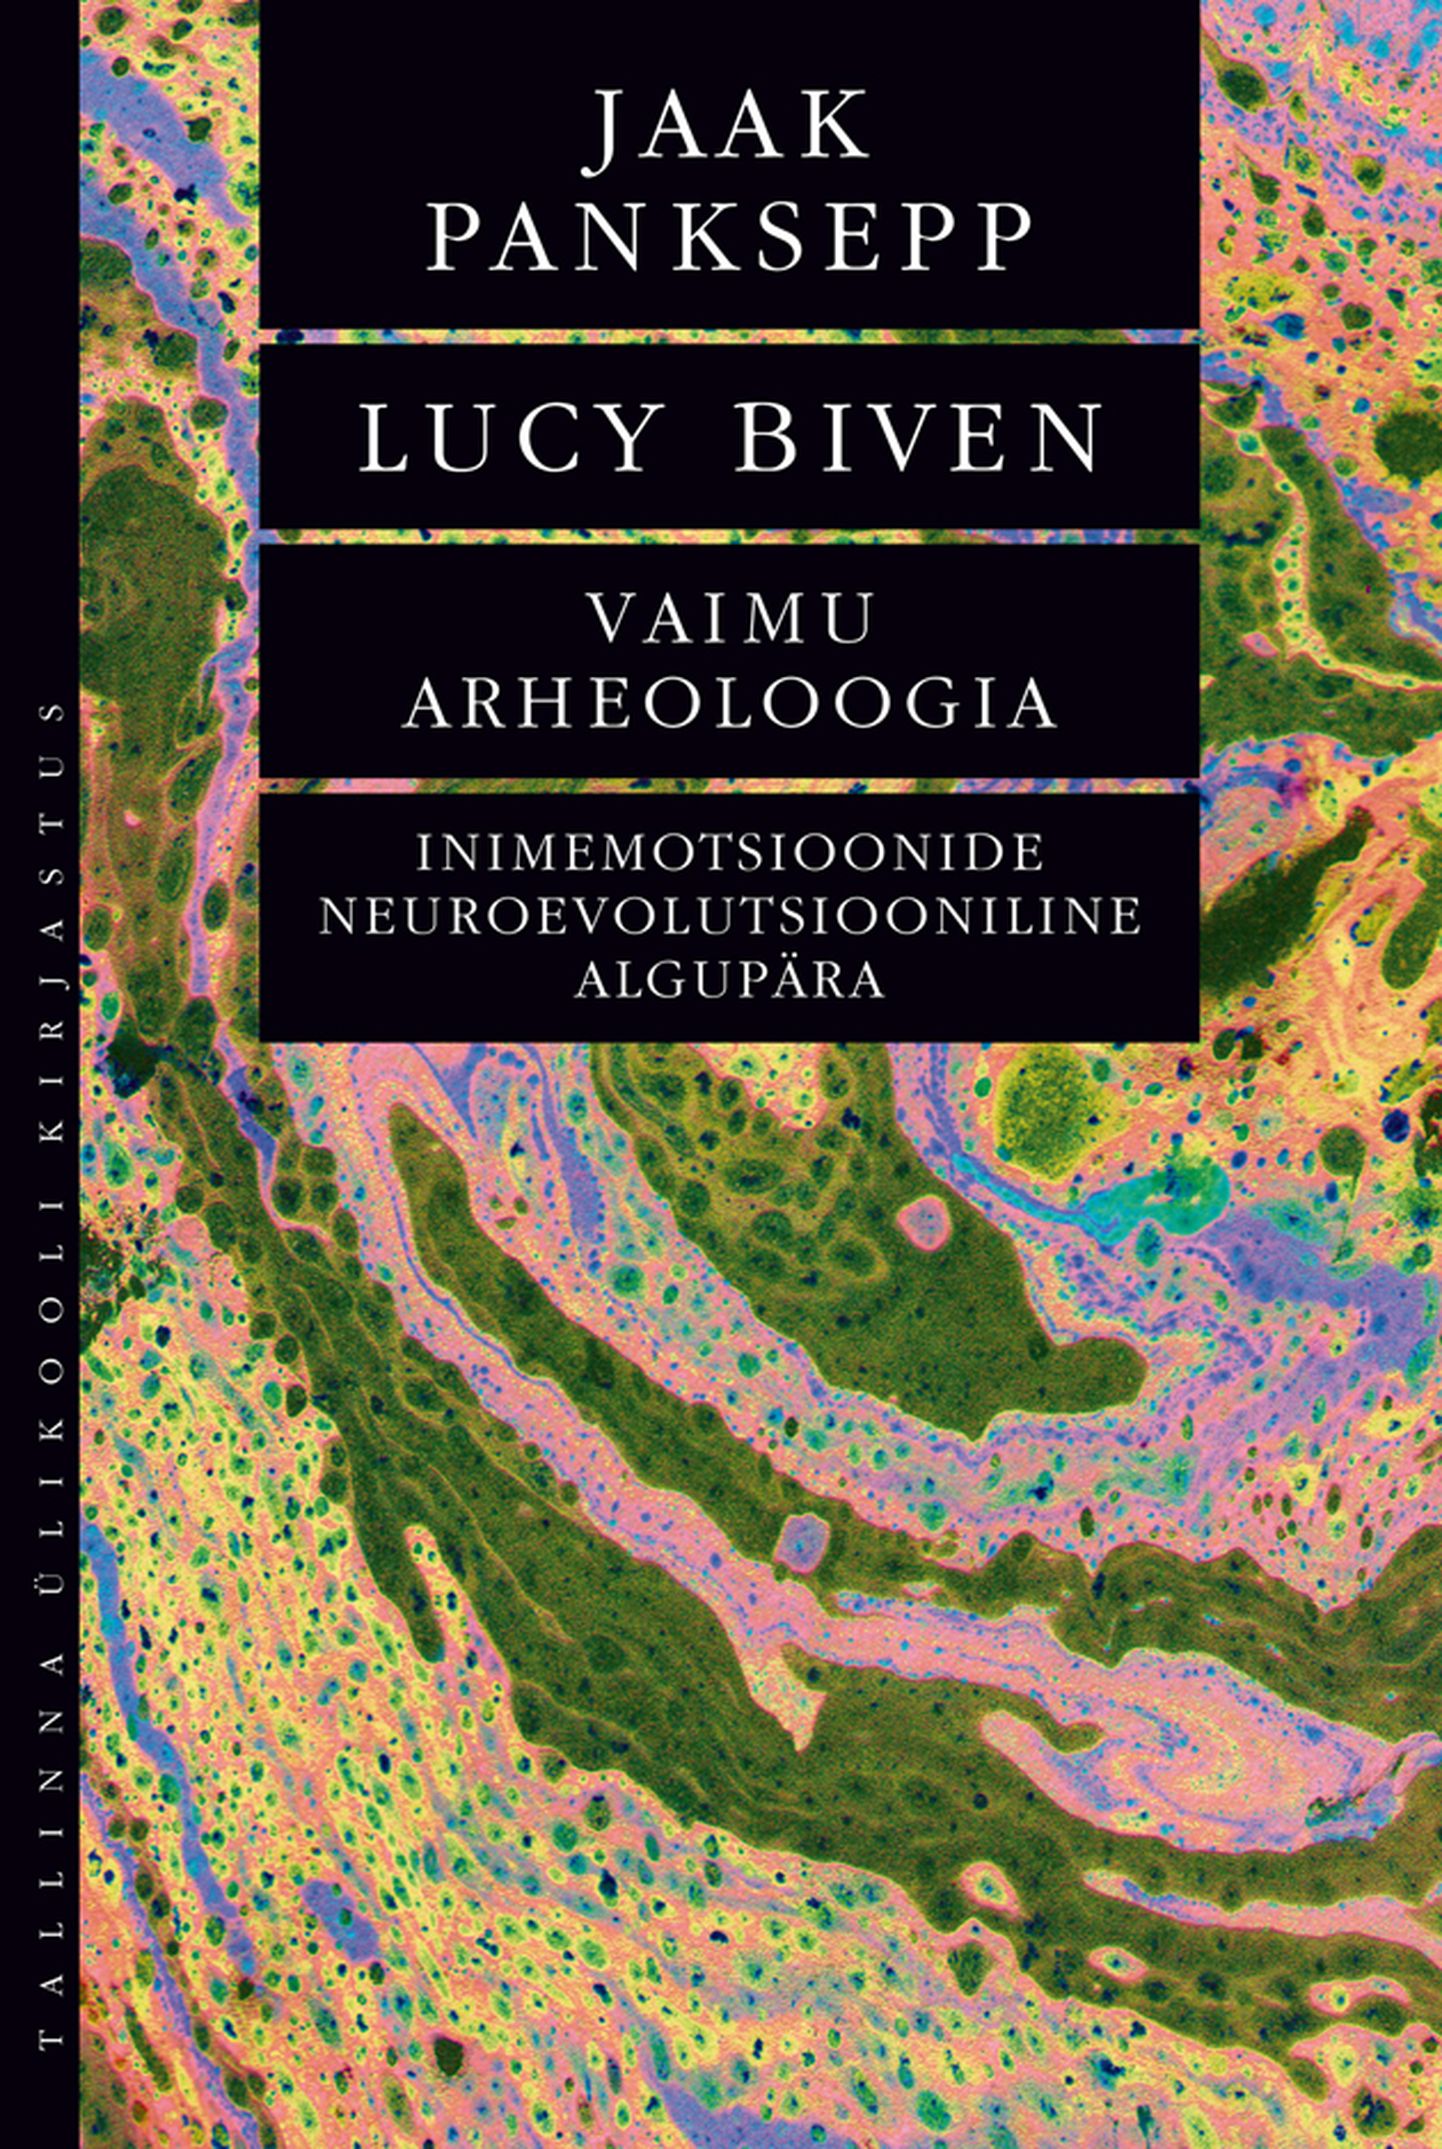 Jaak Panksepp ja Lucy Biven, «Vaimu arheoloogia. Inimemotsioonide neuroevolutsiooniline algupära».